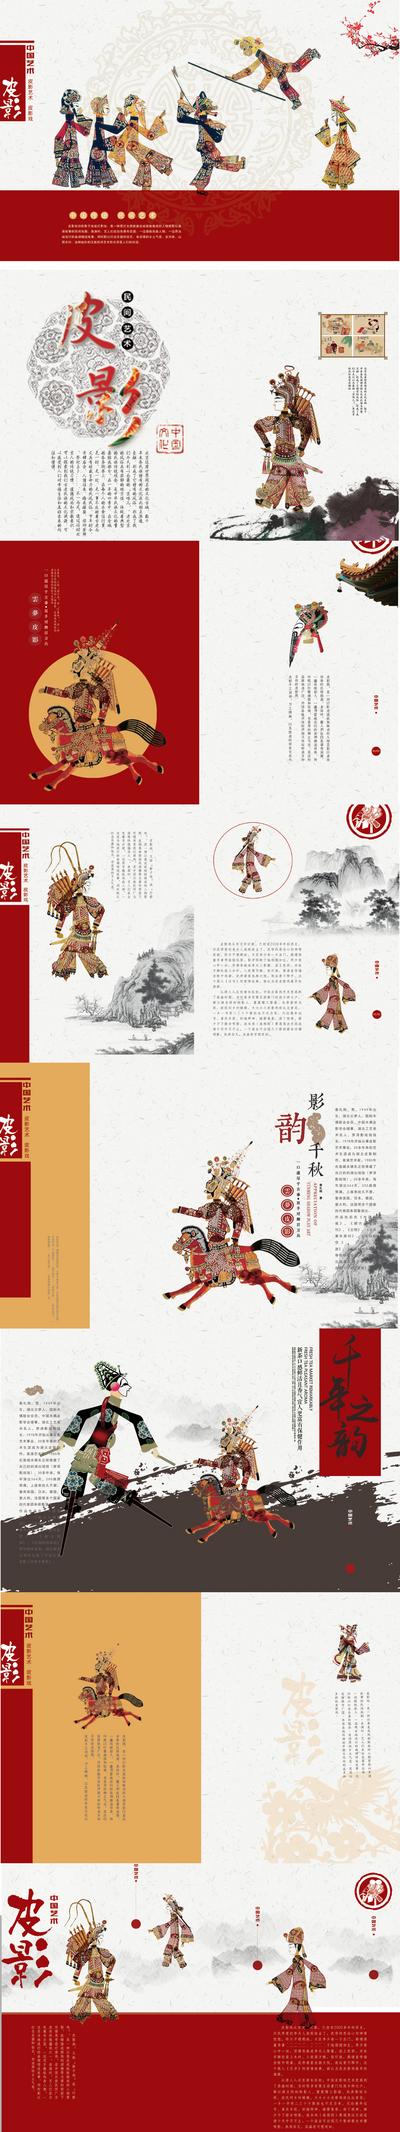 南门网 画册 宣传册 中国传统 皮影戏 非遗 中式 古典